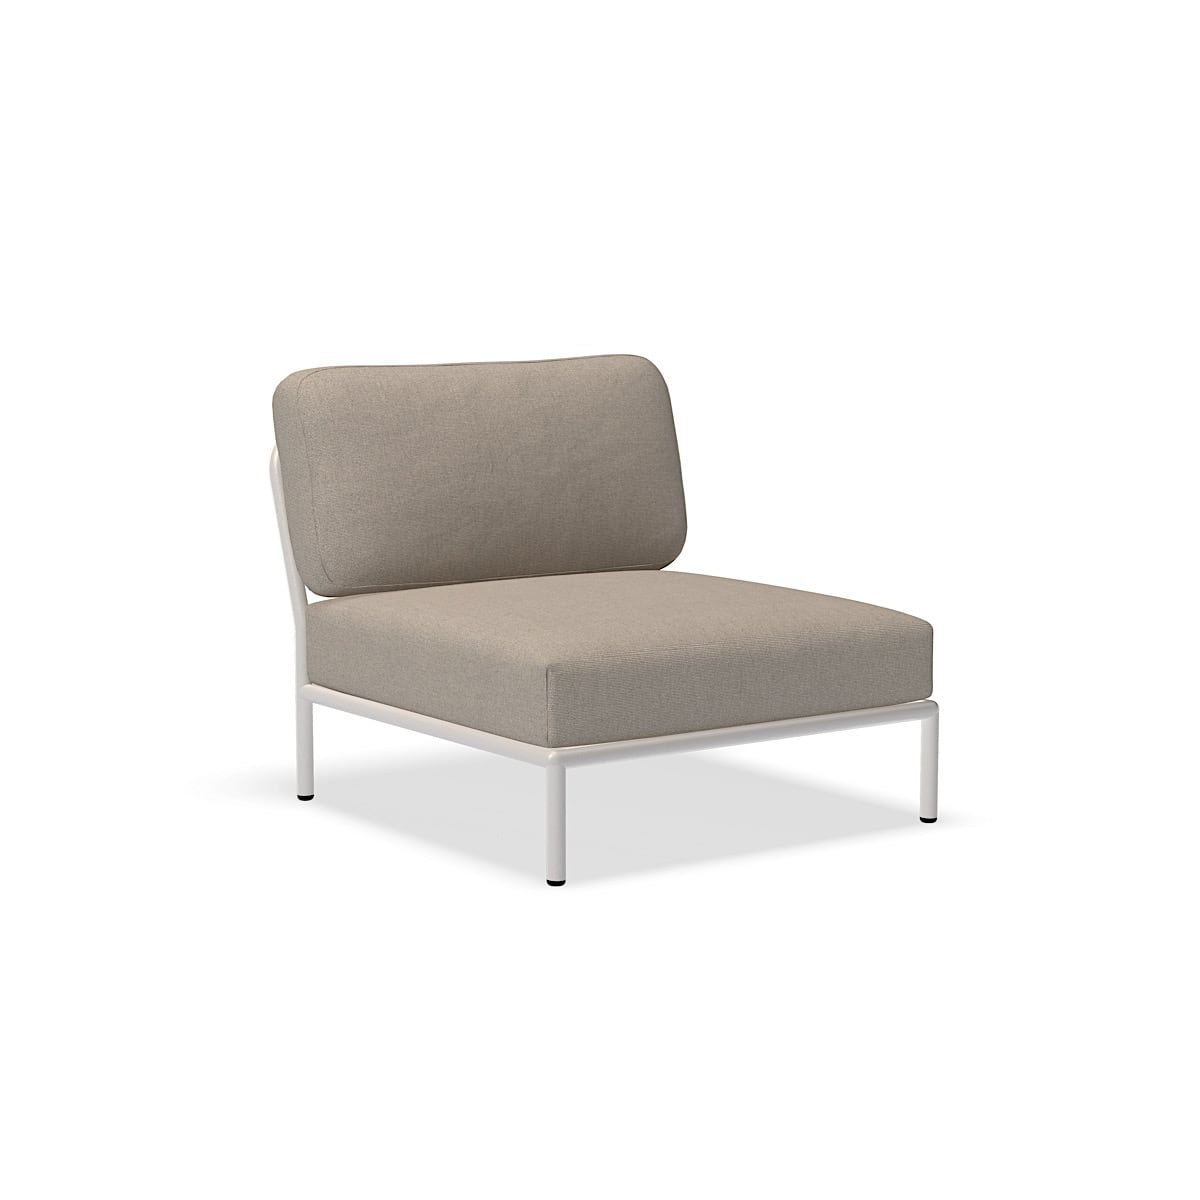 כיסא - 12205-9243 - כיסא, אפר (HERITAGE), מבנה לבן